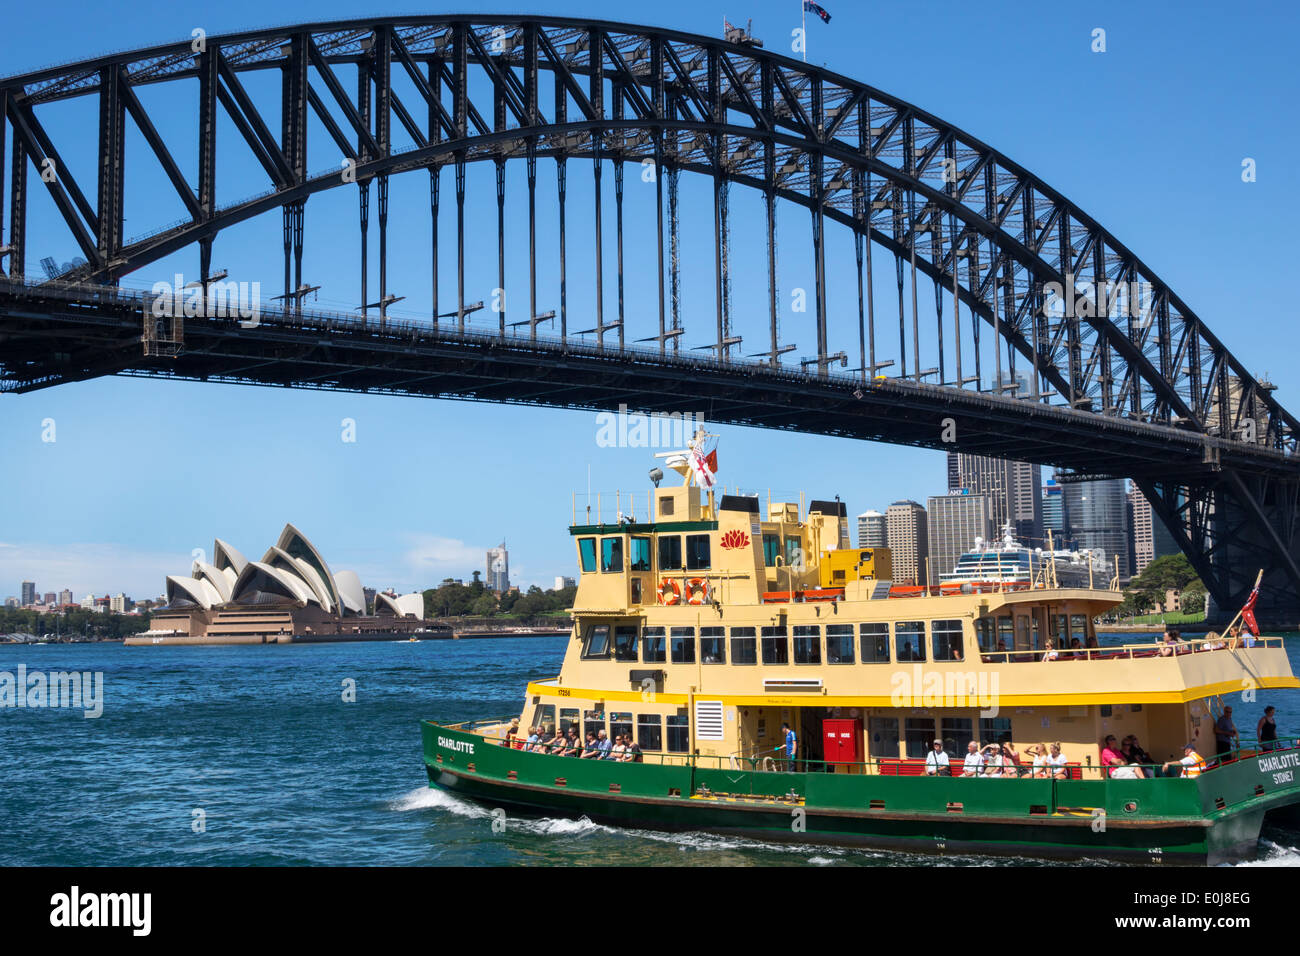 Sydney Australie,Harbour Bridge,port,Opera House,Sydney Ferries,ferry,bateau,AU140310077 Banque D'Images